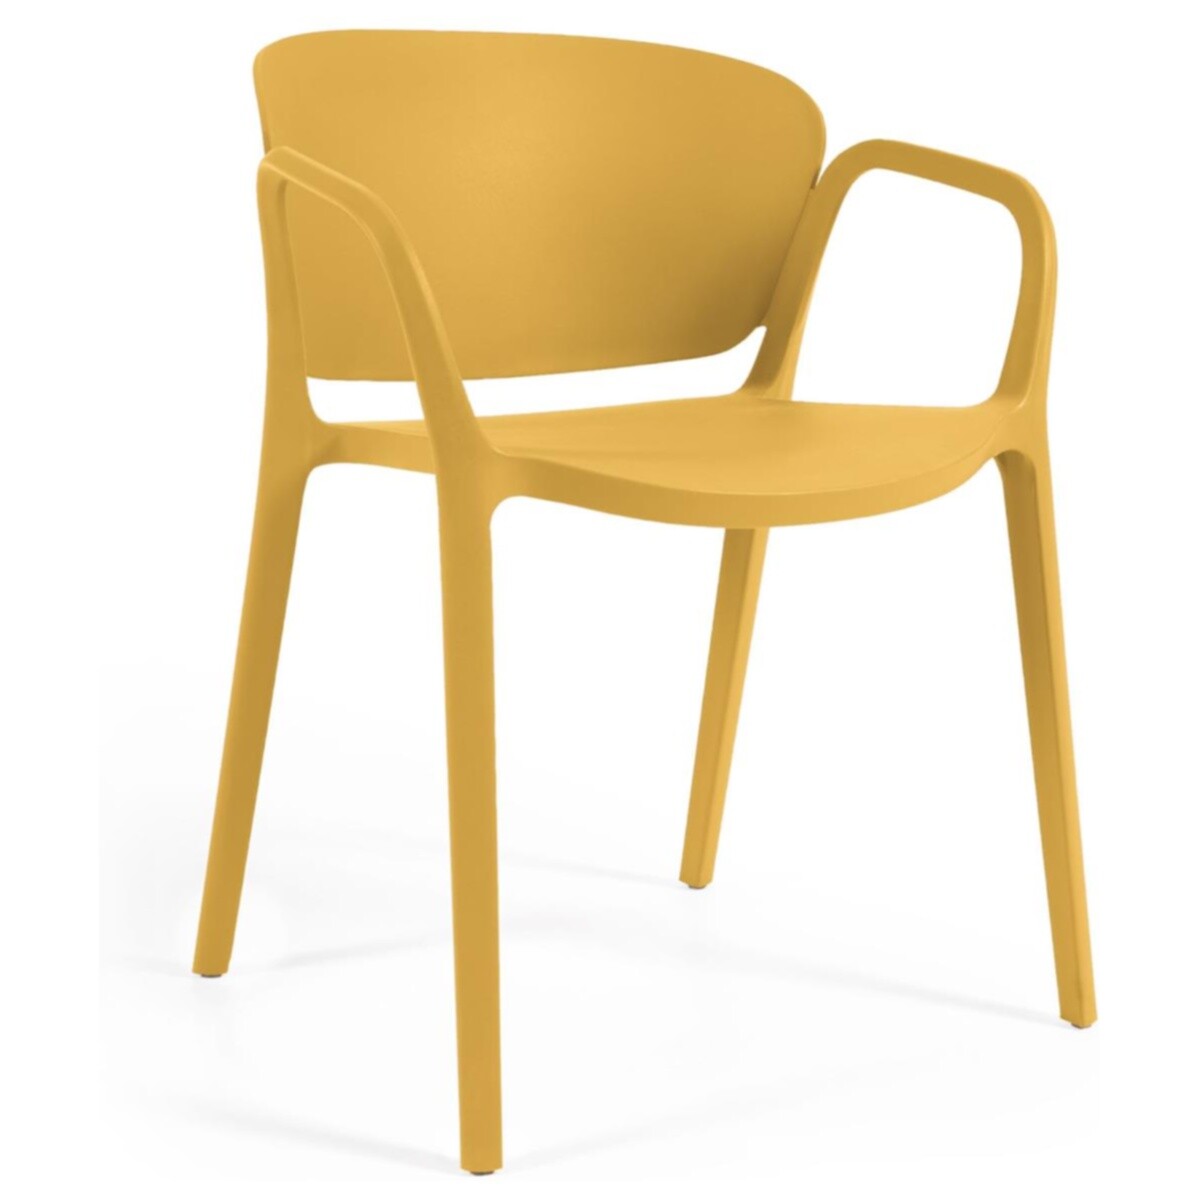 Обеденный стул пластиковый желтый Ania от La Forma